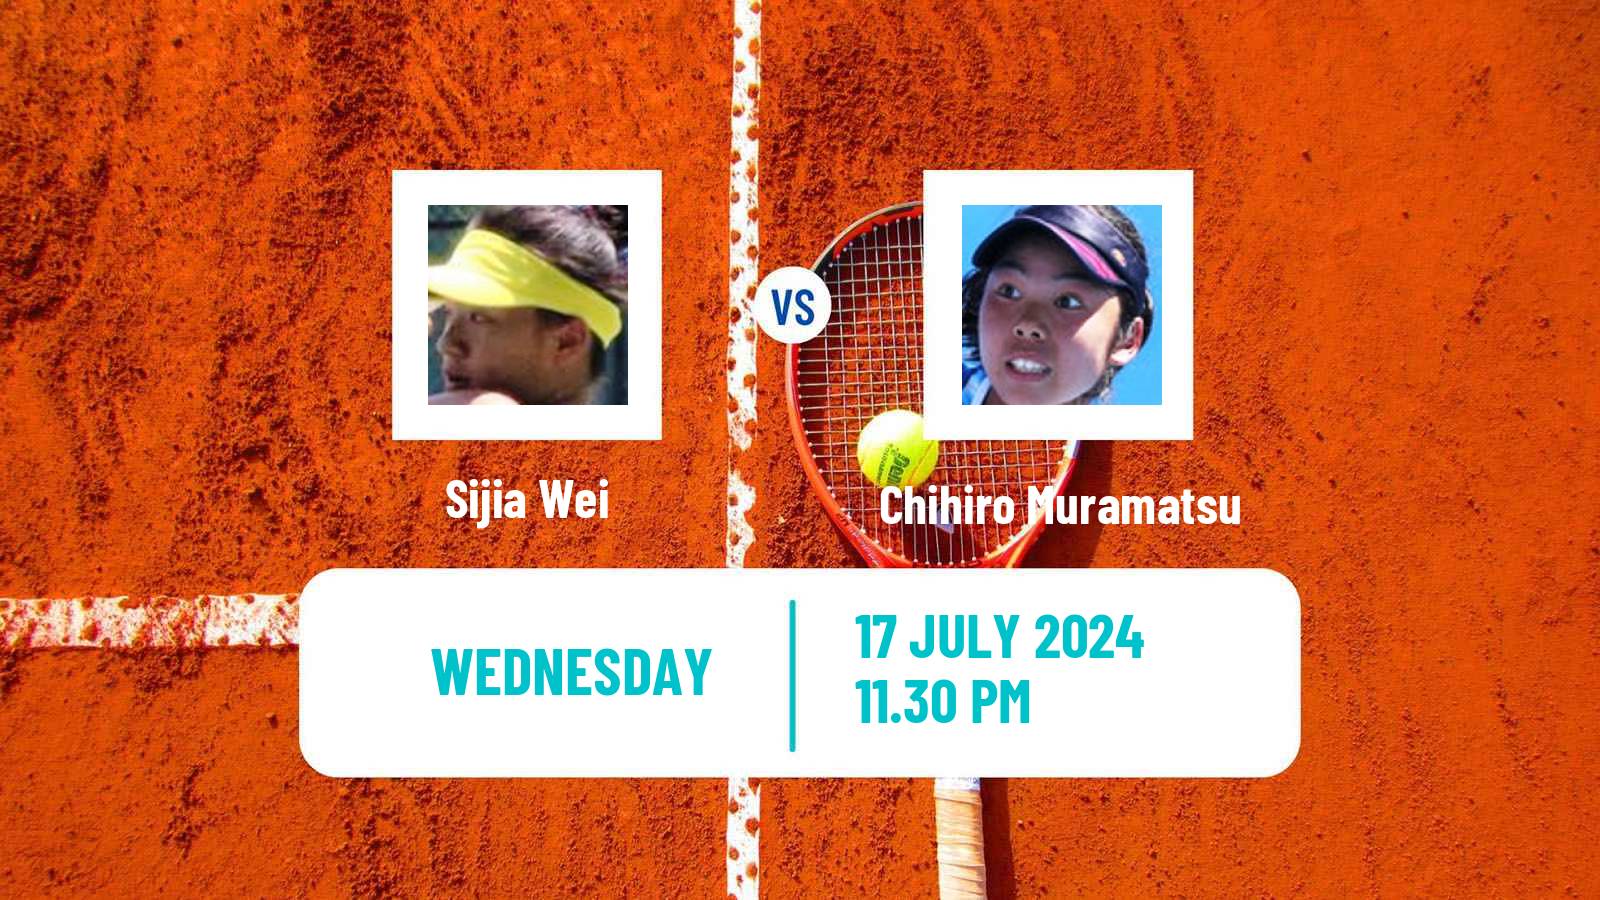 Tennis ITF W35 Tianjin 2 Women Sijia Wei - Chihiro Muramatsu